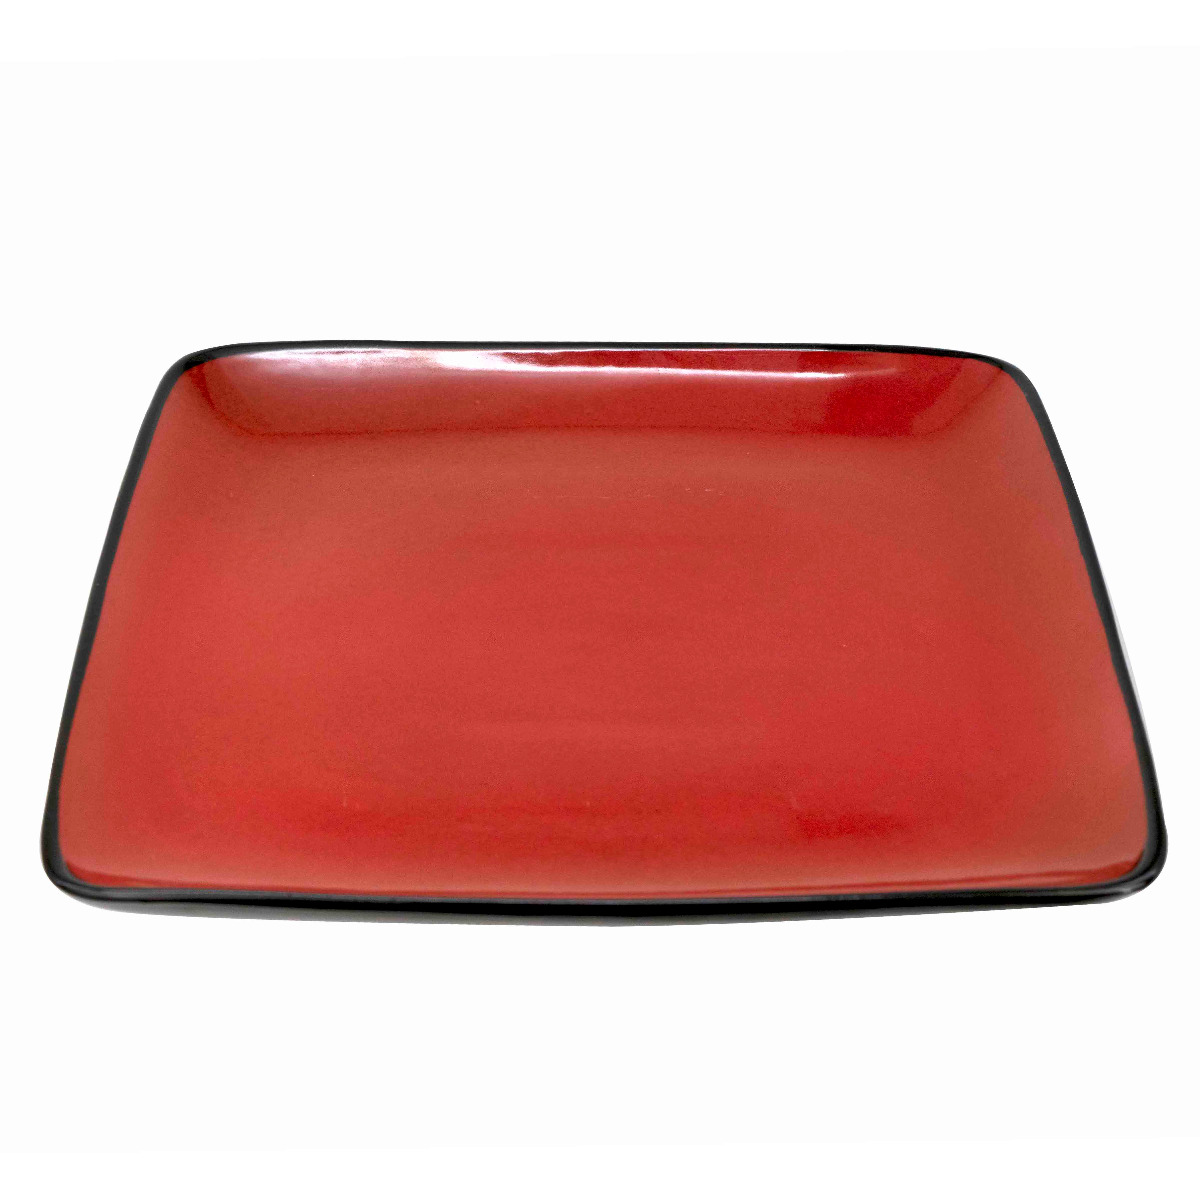 Ceramic serving plate 27cm